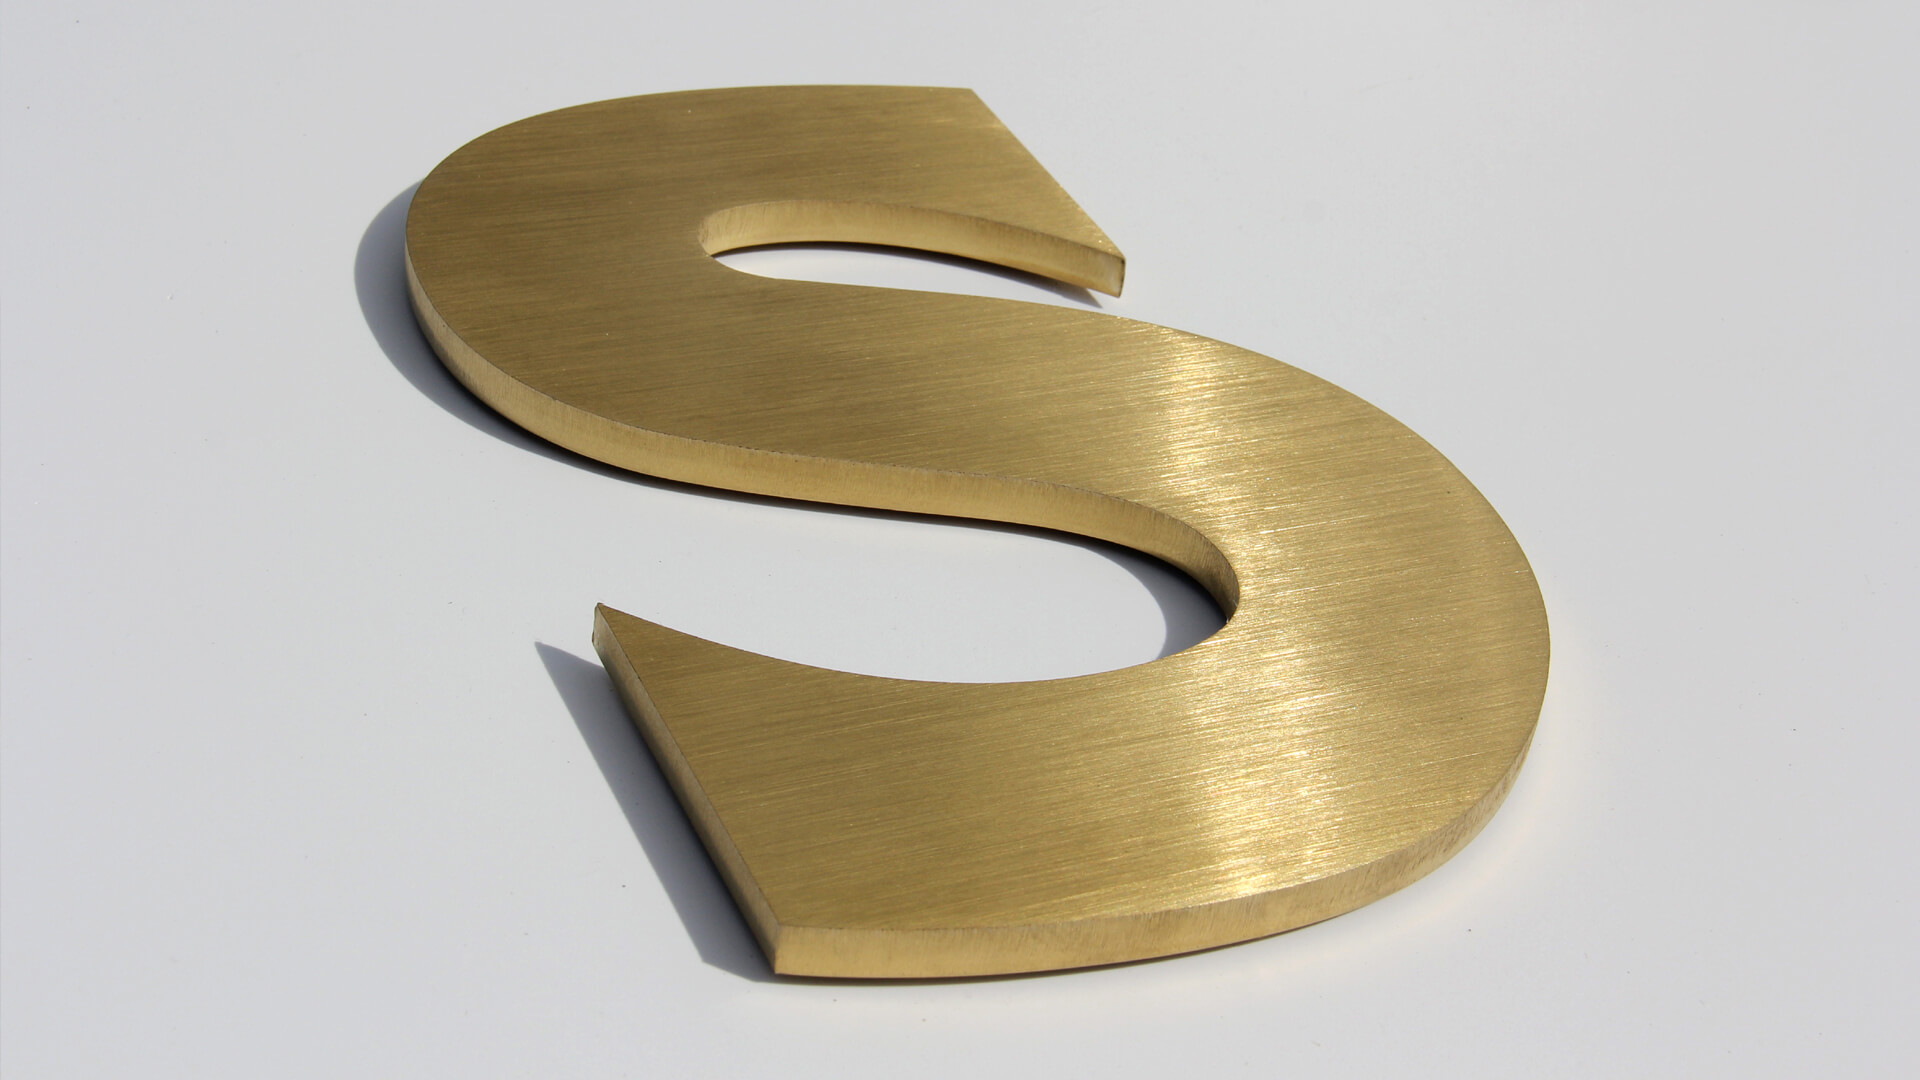 La letra de oro S - Letra S de metal en dorado, estilo industrial.